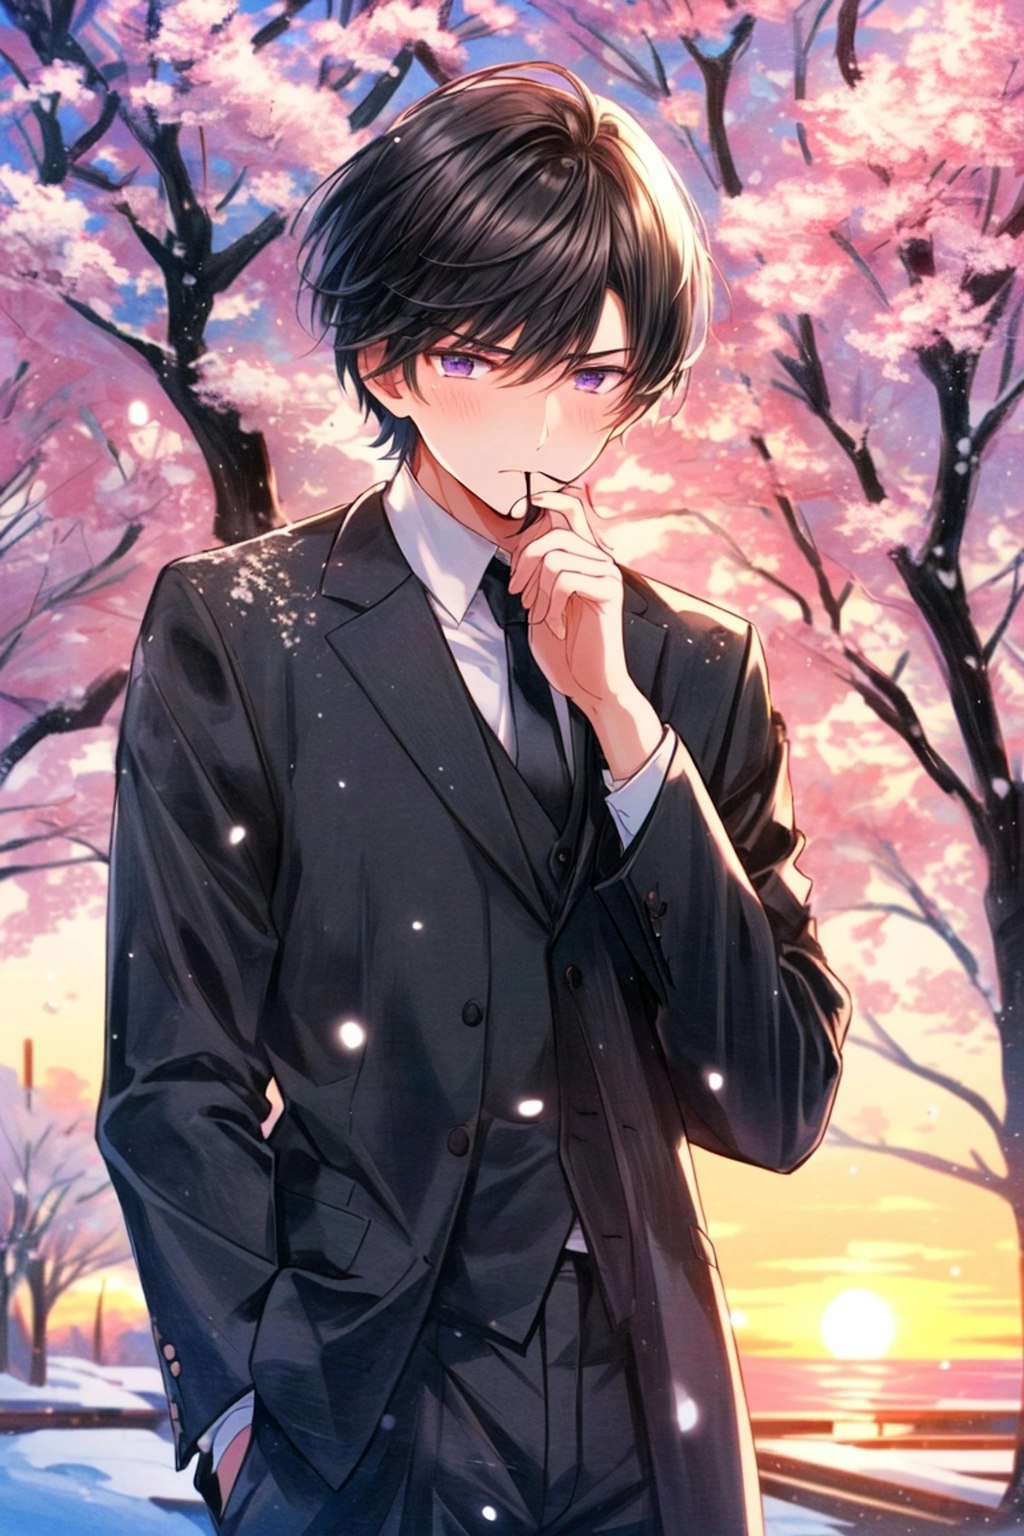 思い出の桜並木の下にいる、黒髪短髪男性…(6枚)その1